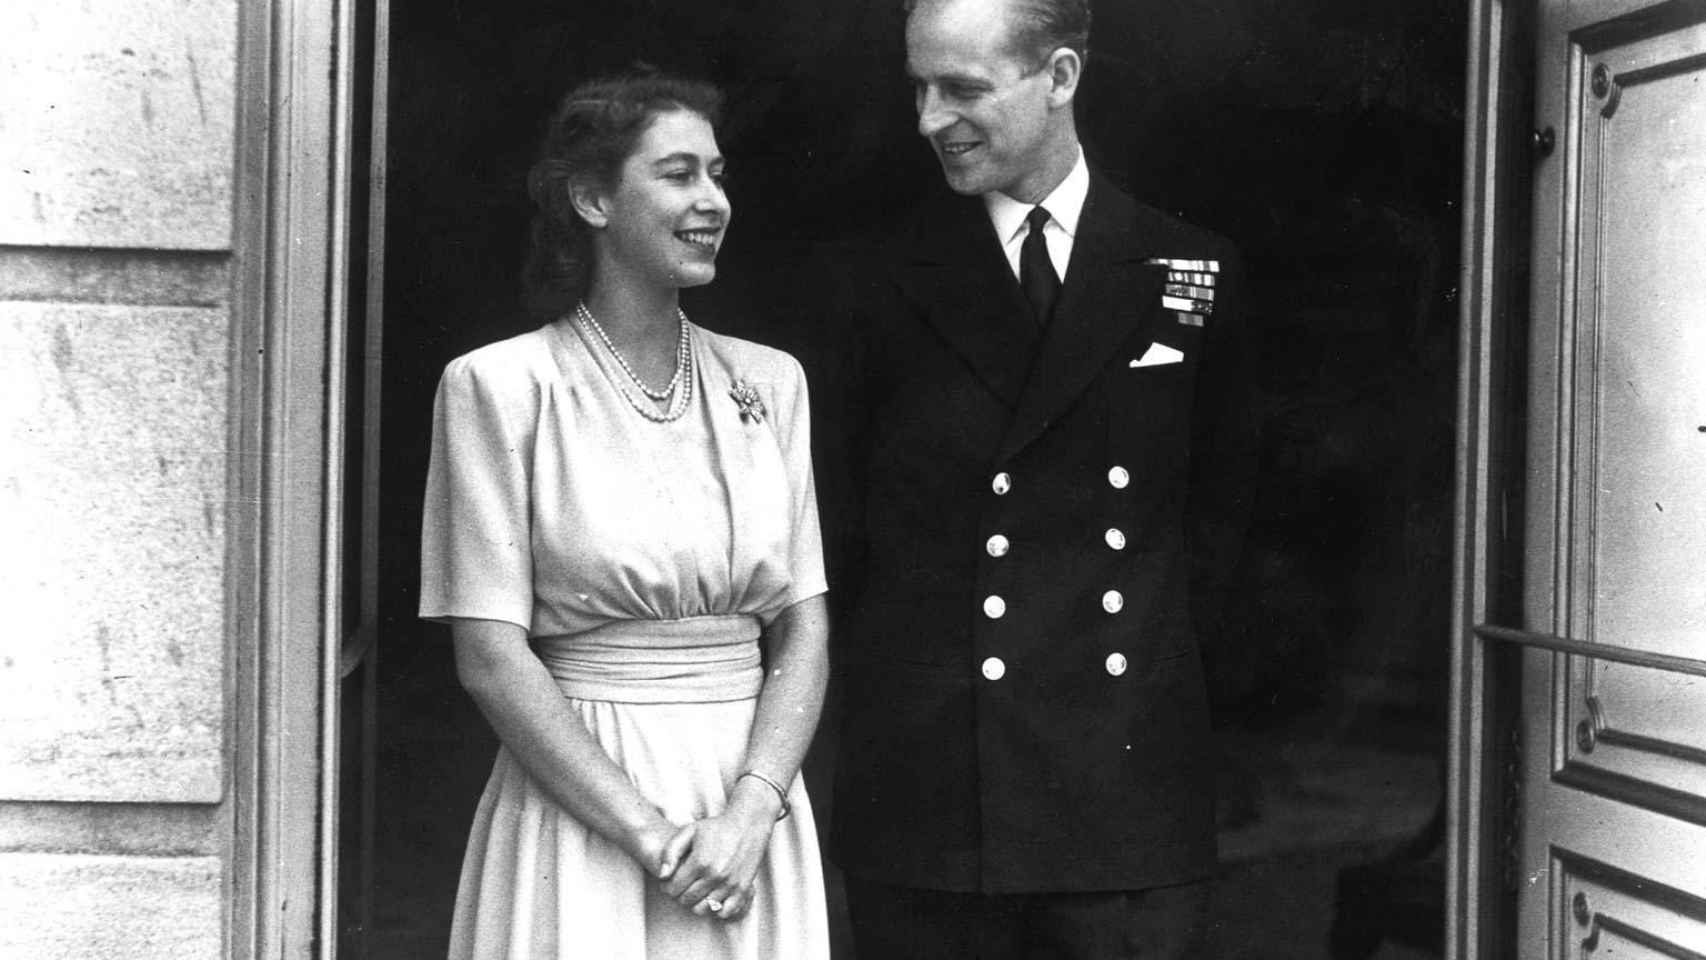 Retrato oficial de los príncipes Felipe e Isabel el día que anunciaron compromiso. Julio de 1947.